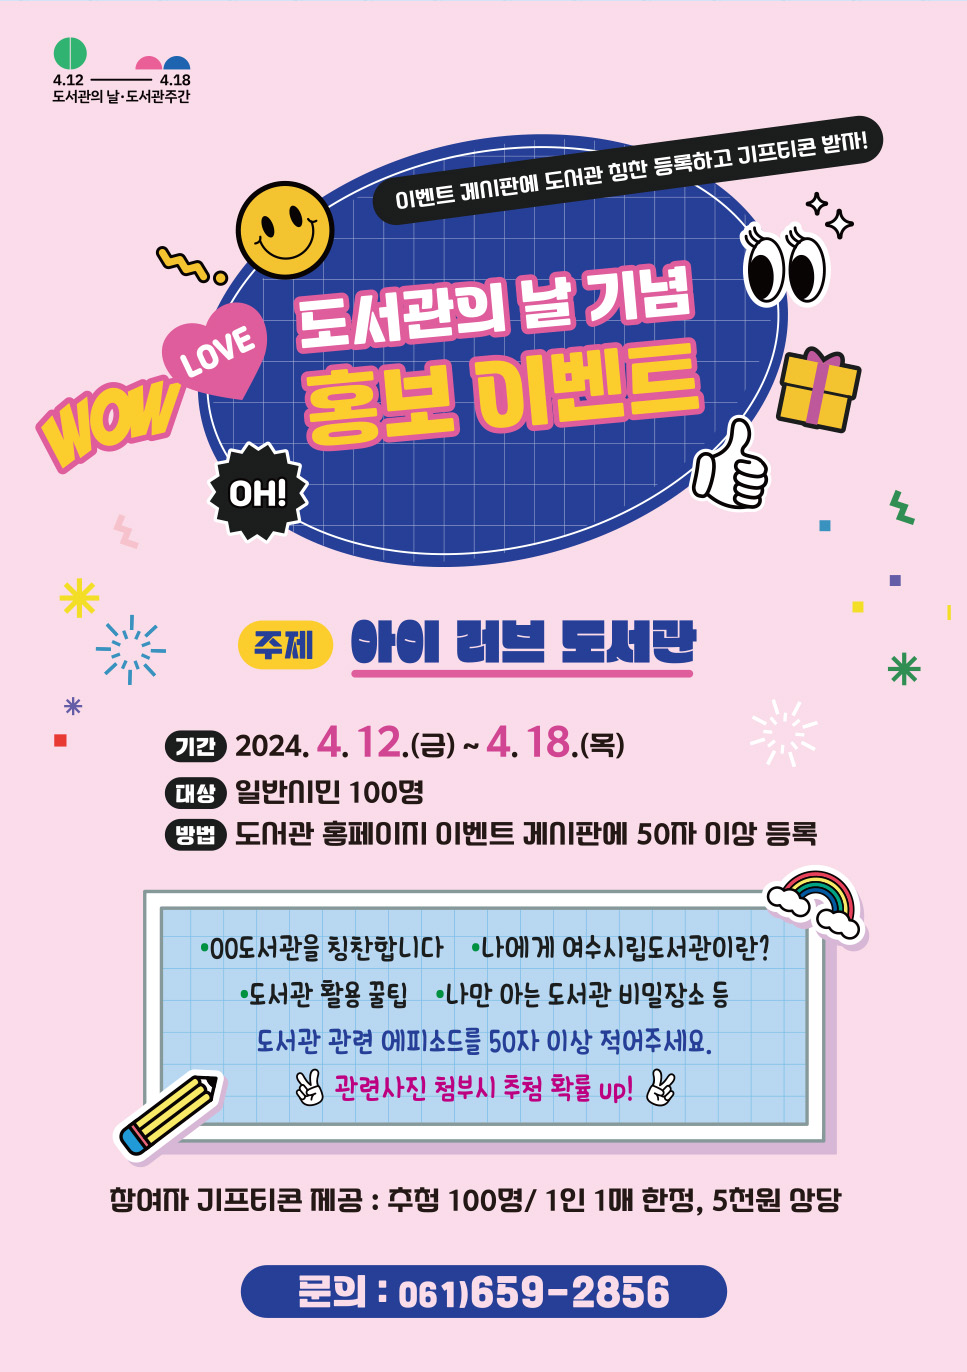 2024 도서관의 날 기념 홍보 이벤트 개최